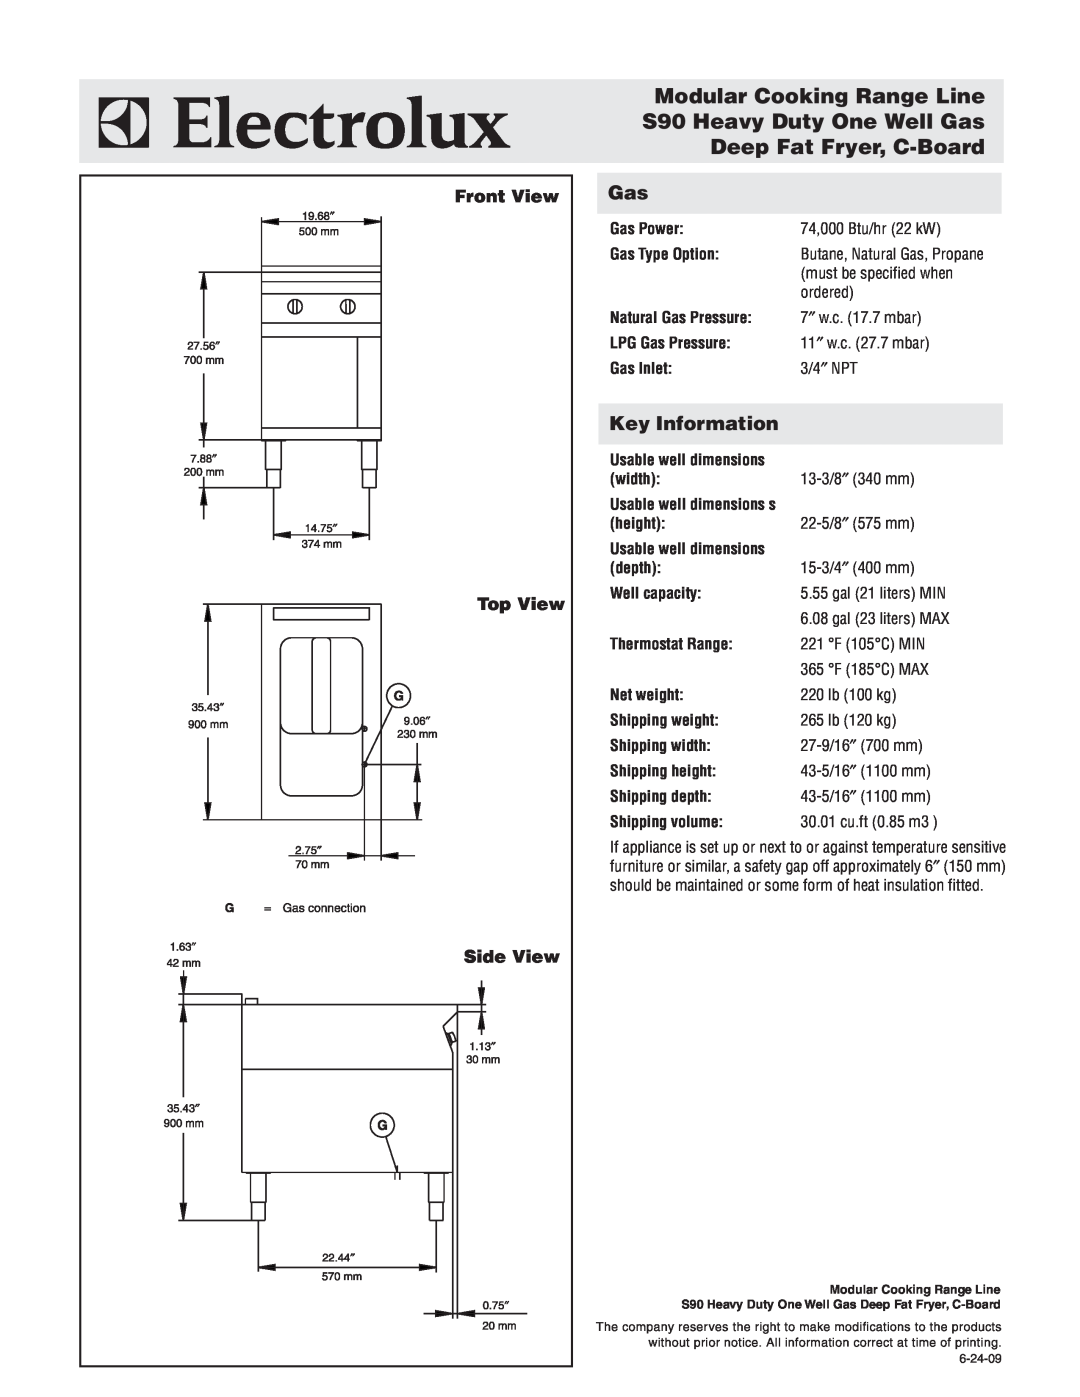 Electrolux 584101 warranty Modular Cooking Range Line S90 Heavy Duty One Well Gas, Deep Fat Fryer, C-Board, Key Information 